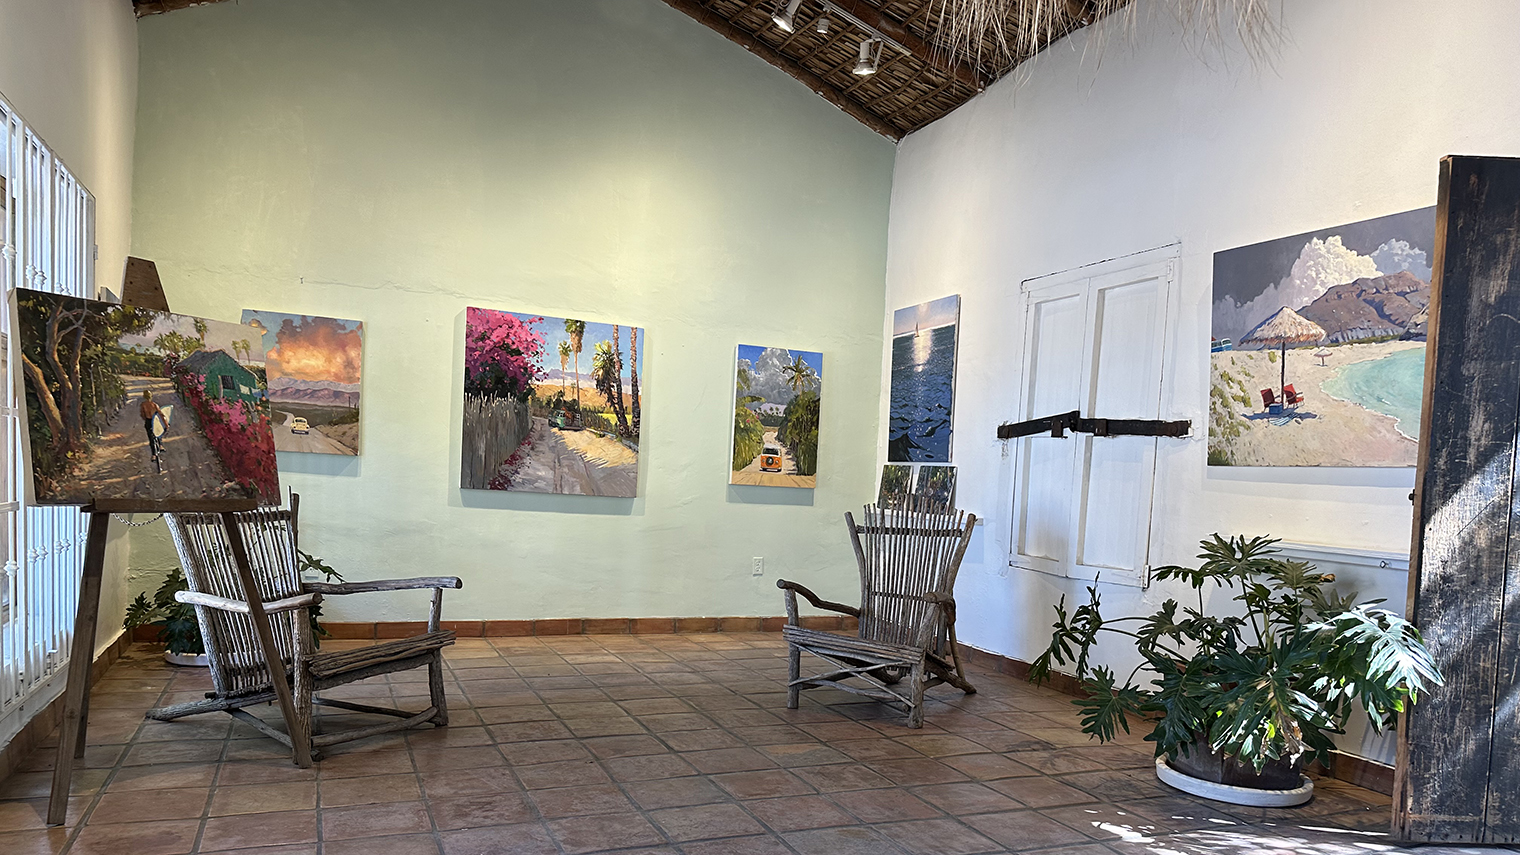 The Ezra Katz Gallery in Todos Santos